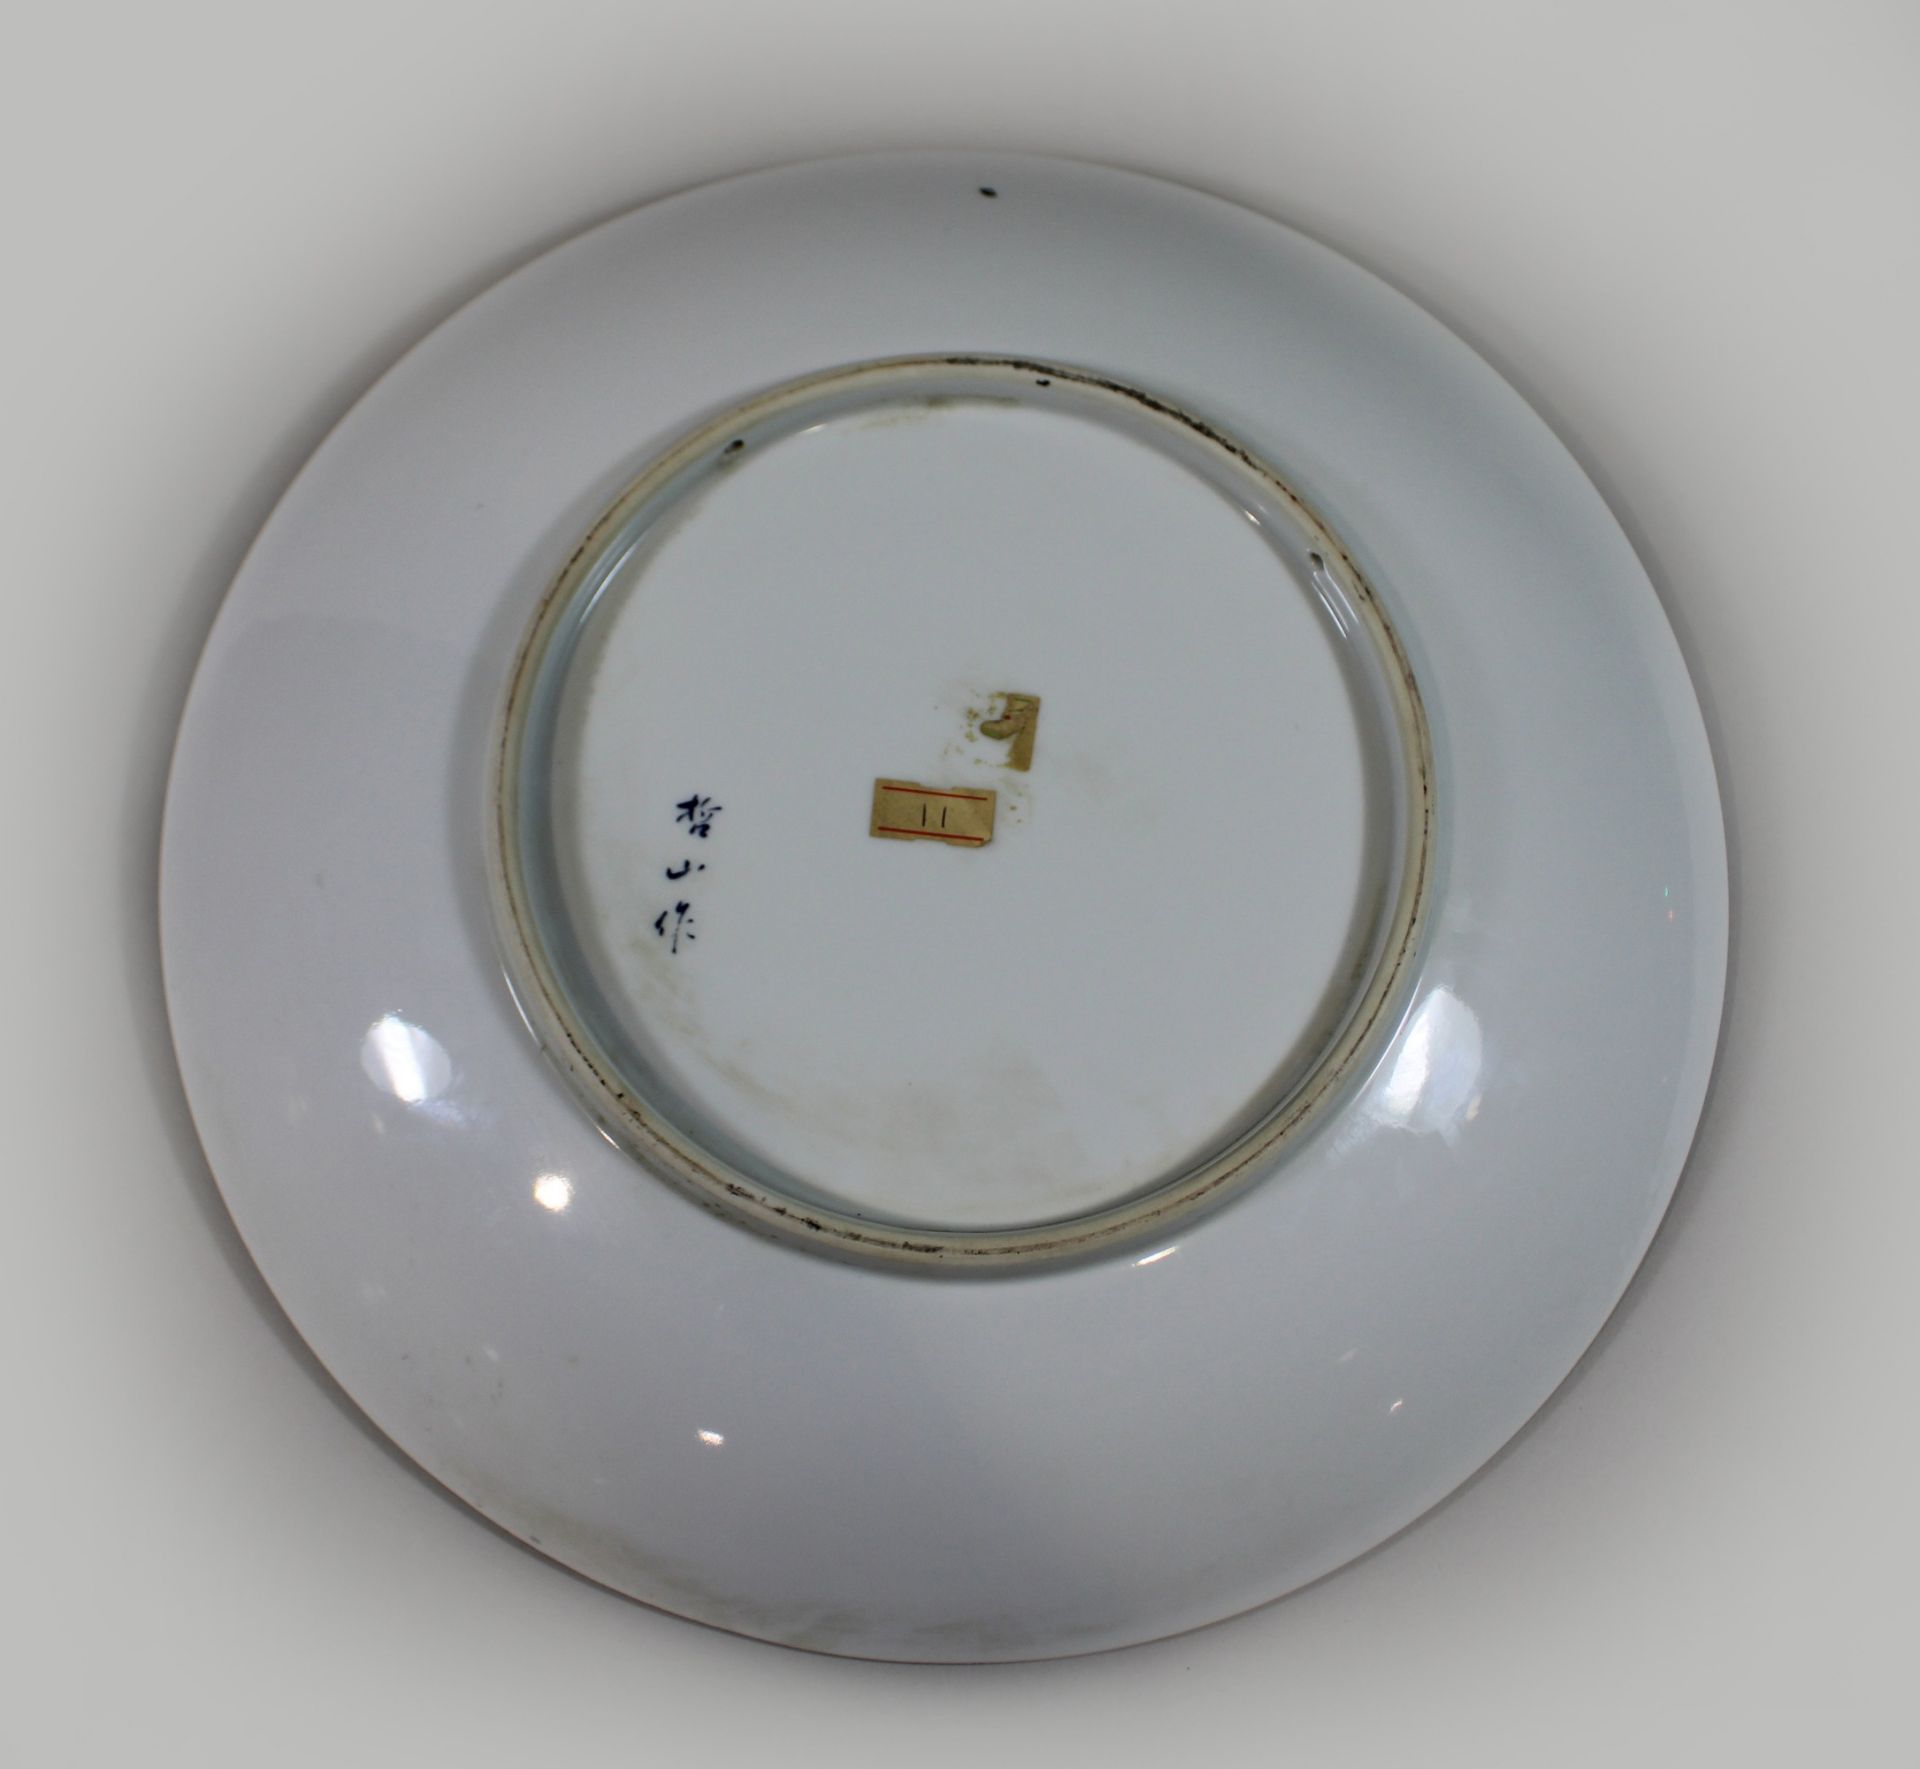 Großer Imari Teller, Japan, Porzellan, Marke am Boden, Dm: 34 cm. Guter, altersbedingter Zustand, G - Bild 2 aus 3